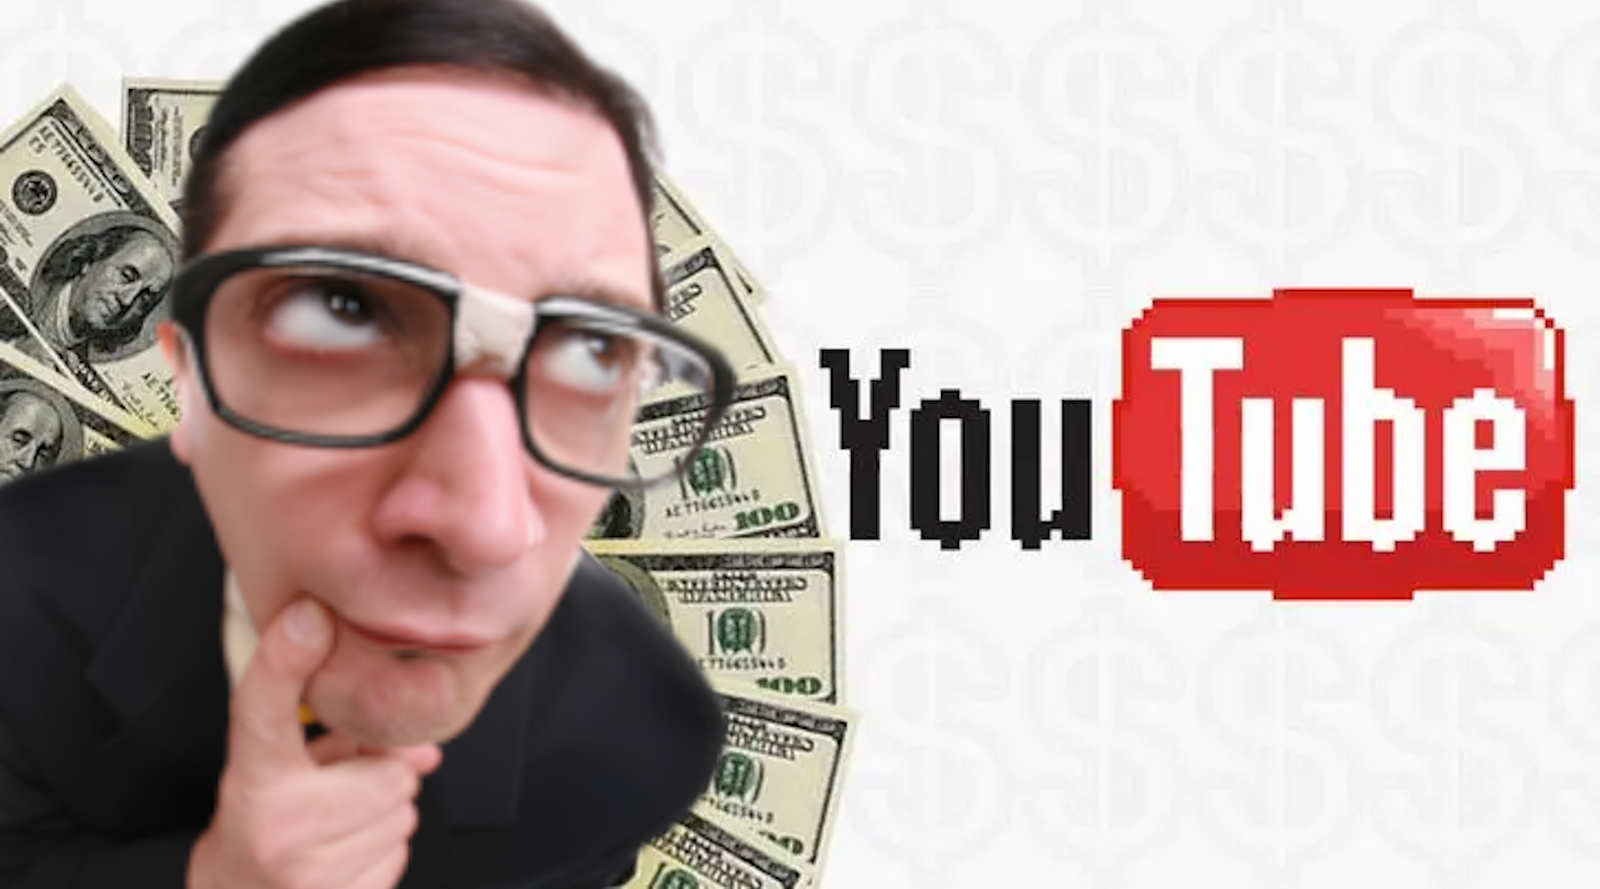 Youtube Money